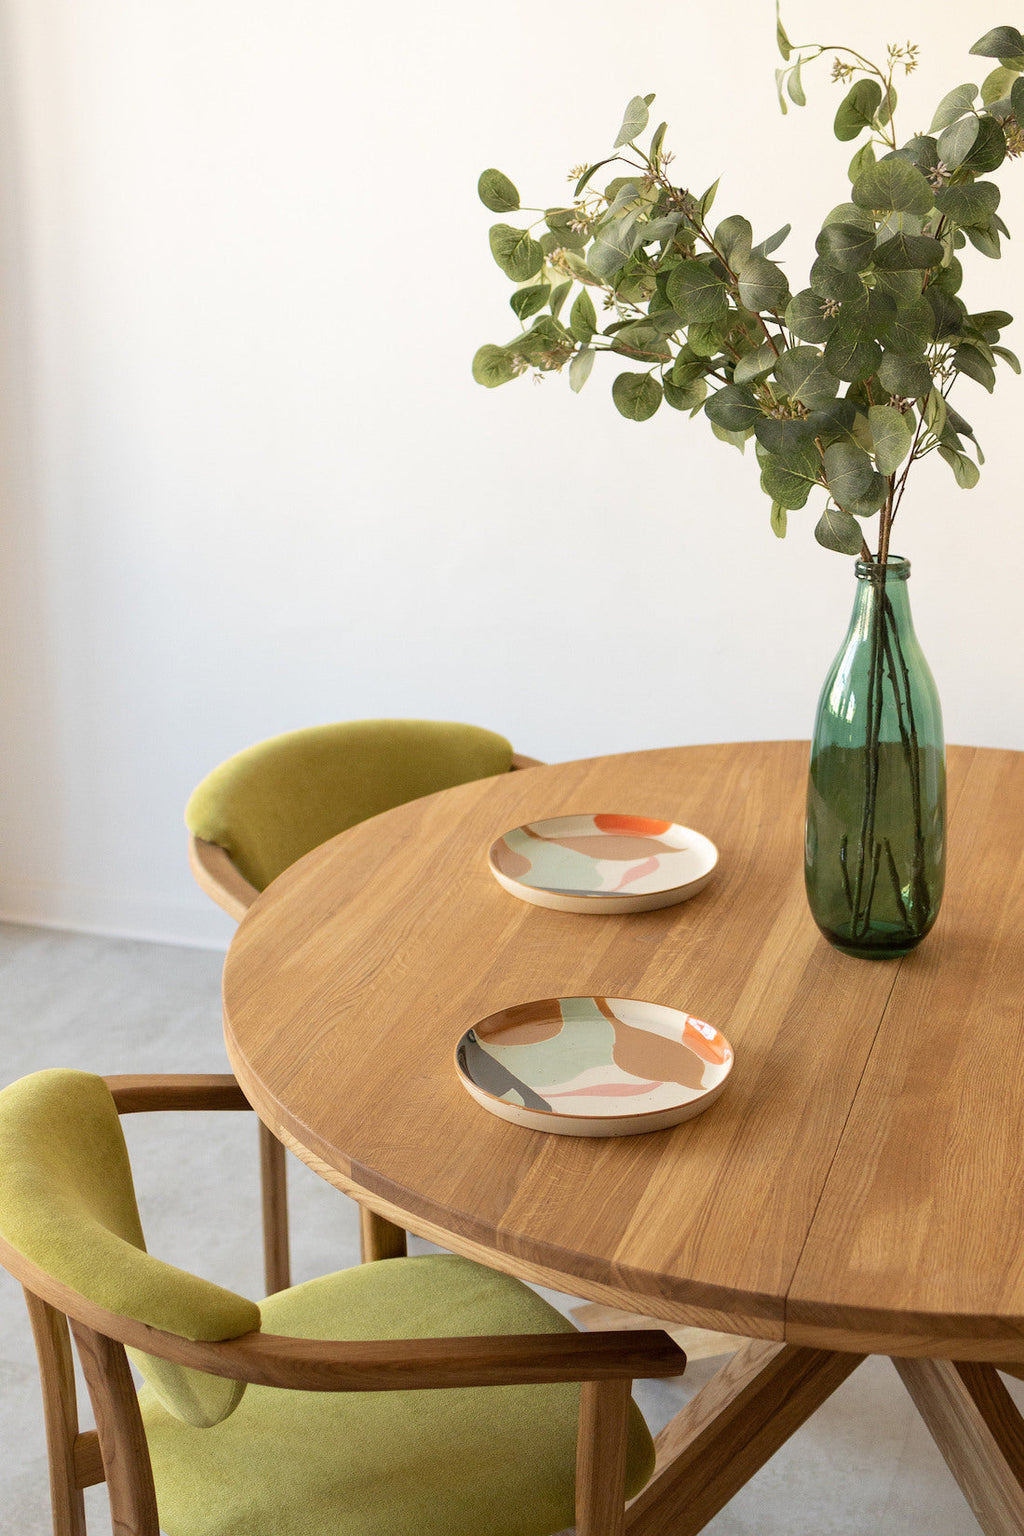 NordicStory "Holger" mesa de jantar redonda extensível em carvalho maciço 140-190 x 140 x 76cm.